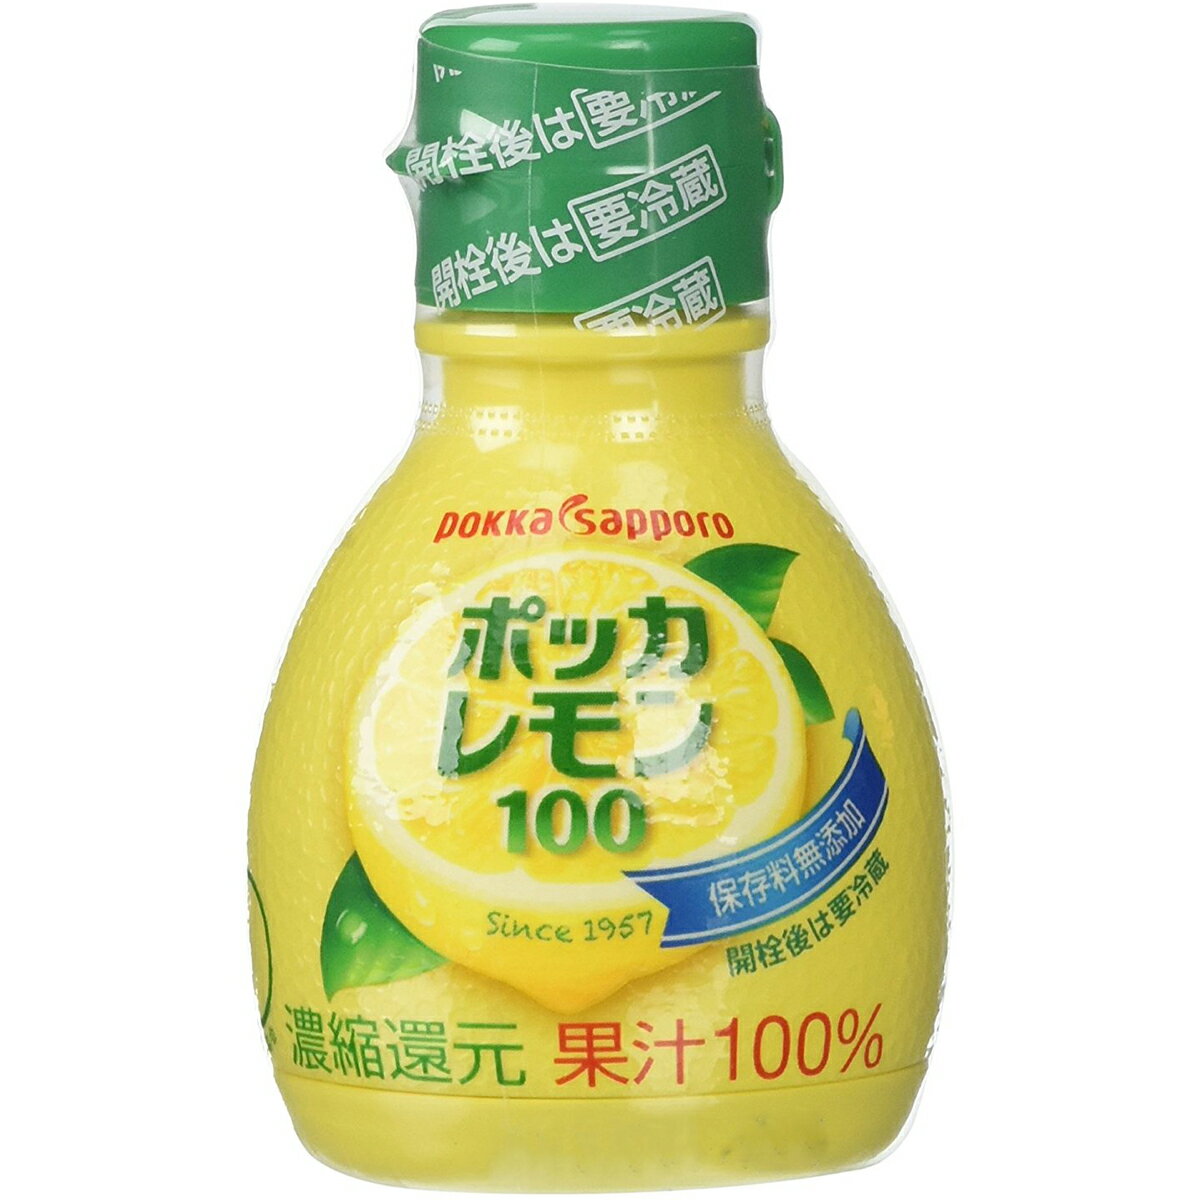 ■製品特徴100%レモン果汁です。保存料無添加で安心、安全。レモン本来の「おいしさ」と「健康」をお届けするために、世界各地から厳選したレモン果汁を使用しています。レモン本来のまろやかでコクのある酸味は、お料理やお飲物、お酒の割材にぴったり。...